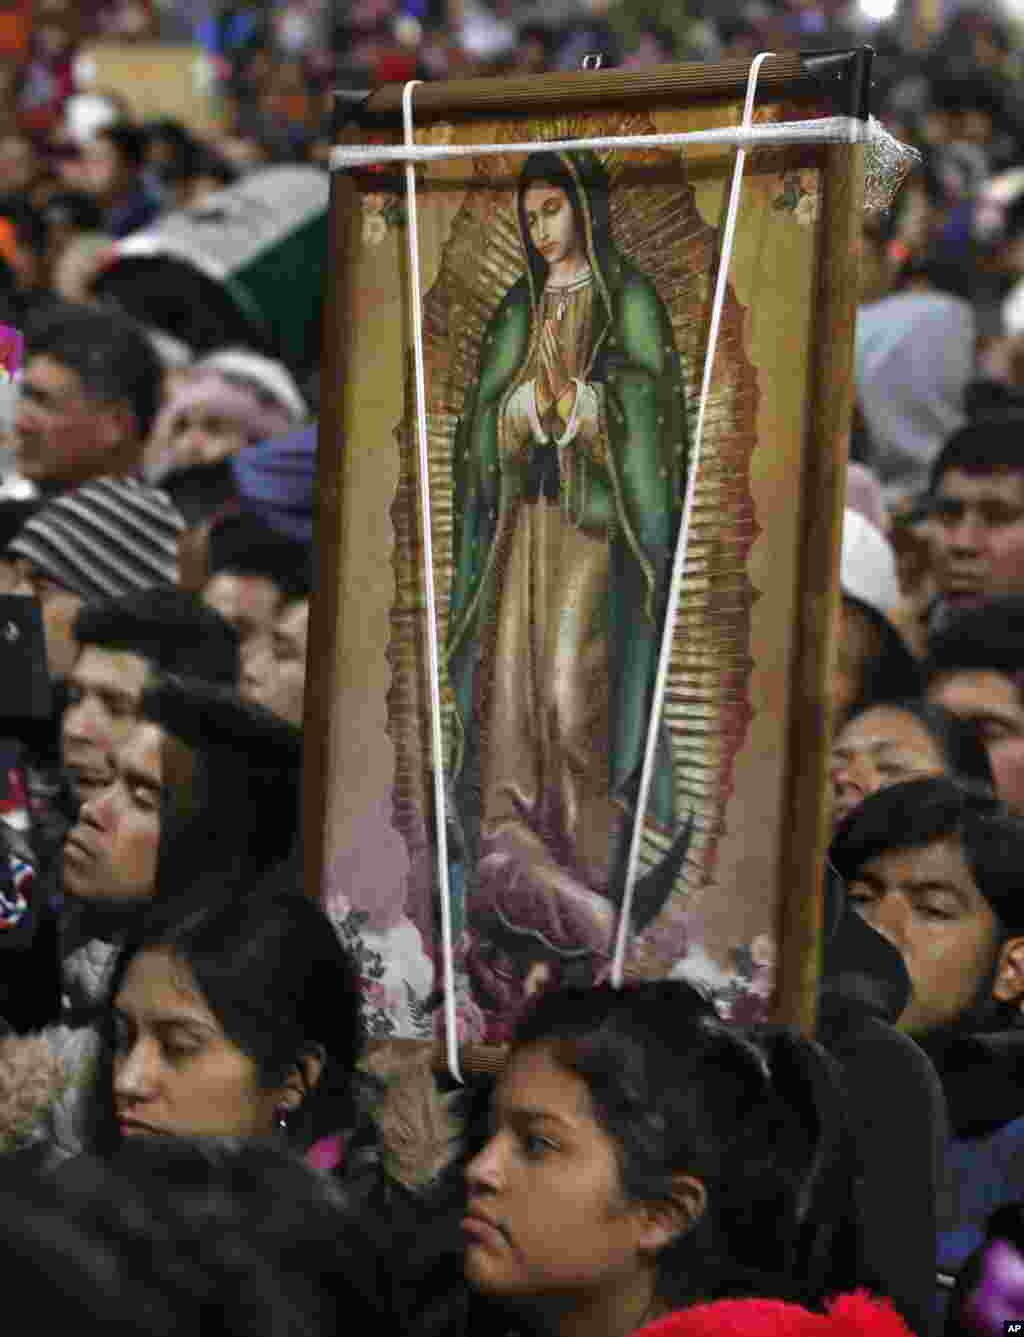 Millones salen a las calles de la Ciudad de México cargando la imagen de la Virgen de Guadalupe, a quienes le atribuyen una serie de milagros.